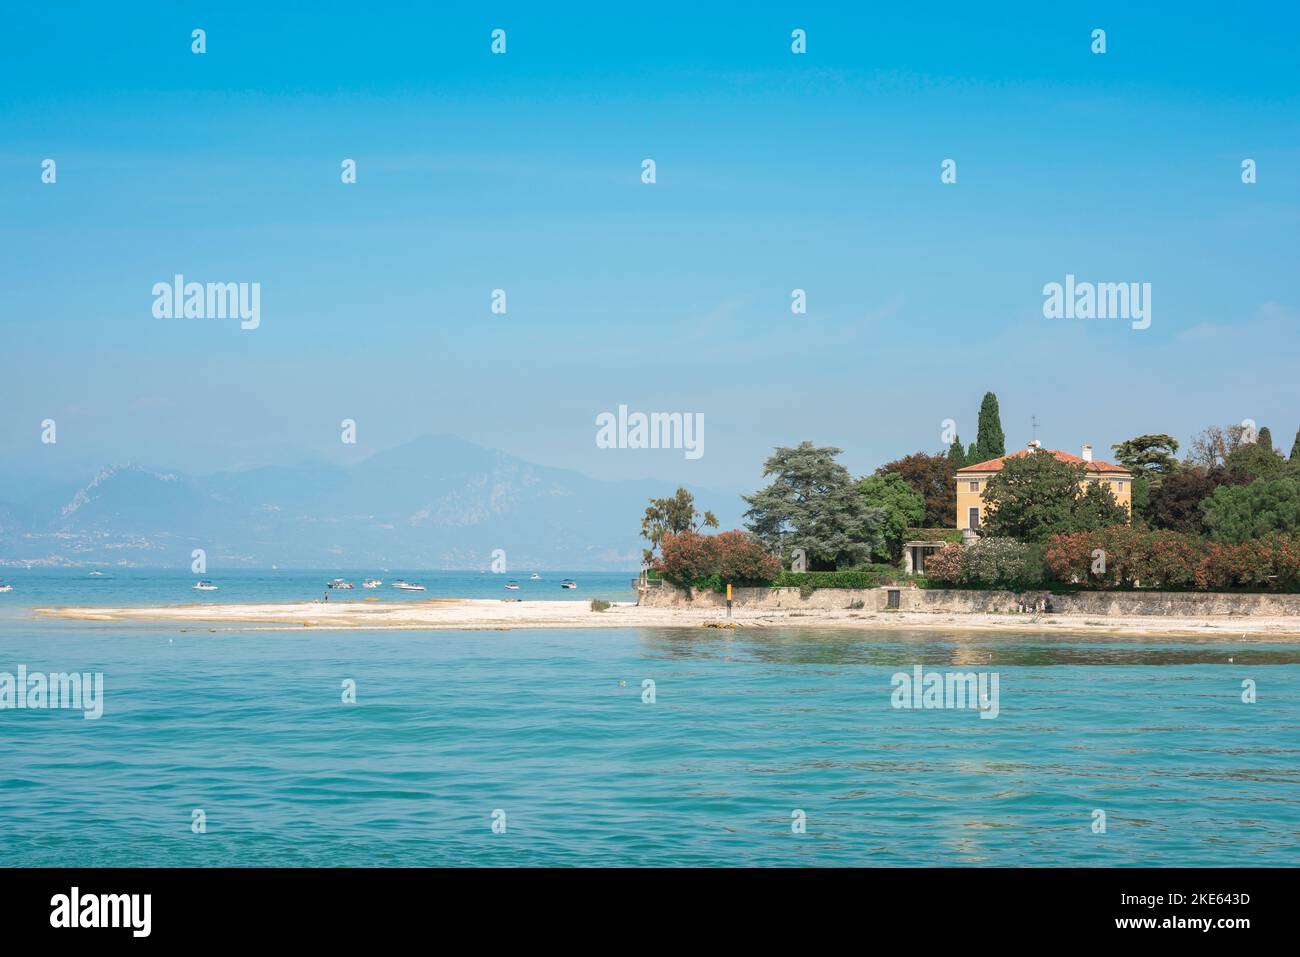 Sirmione Italia, vista en verano de la playa de arena blanca en Punta Staffalo en la pintoresca costa oeste de la península de Sirmione, Lago Garda, Italia Foto de stock